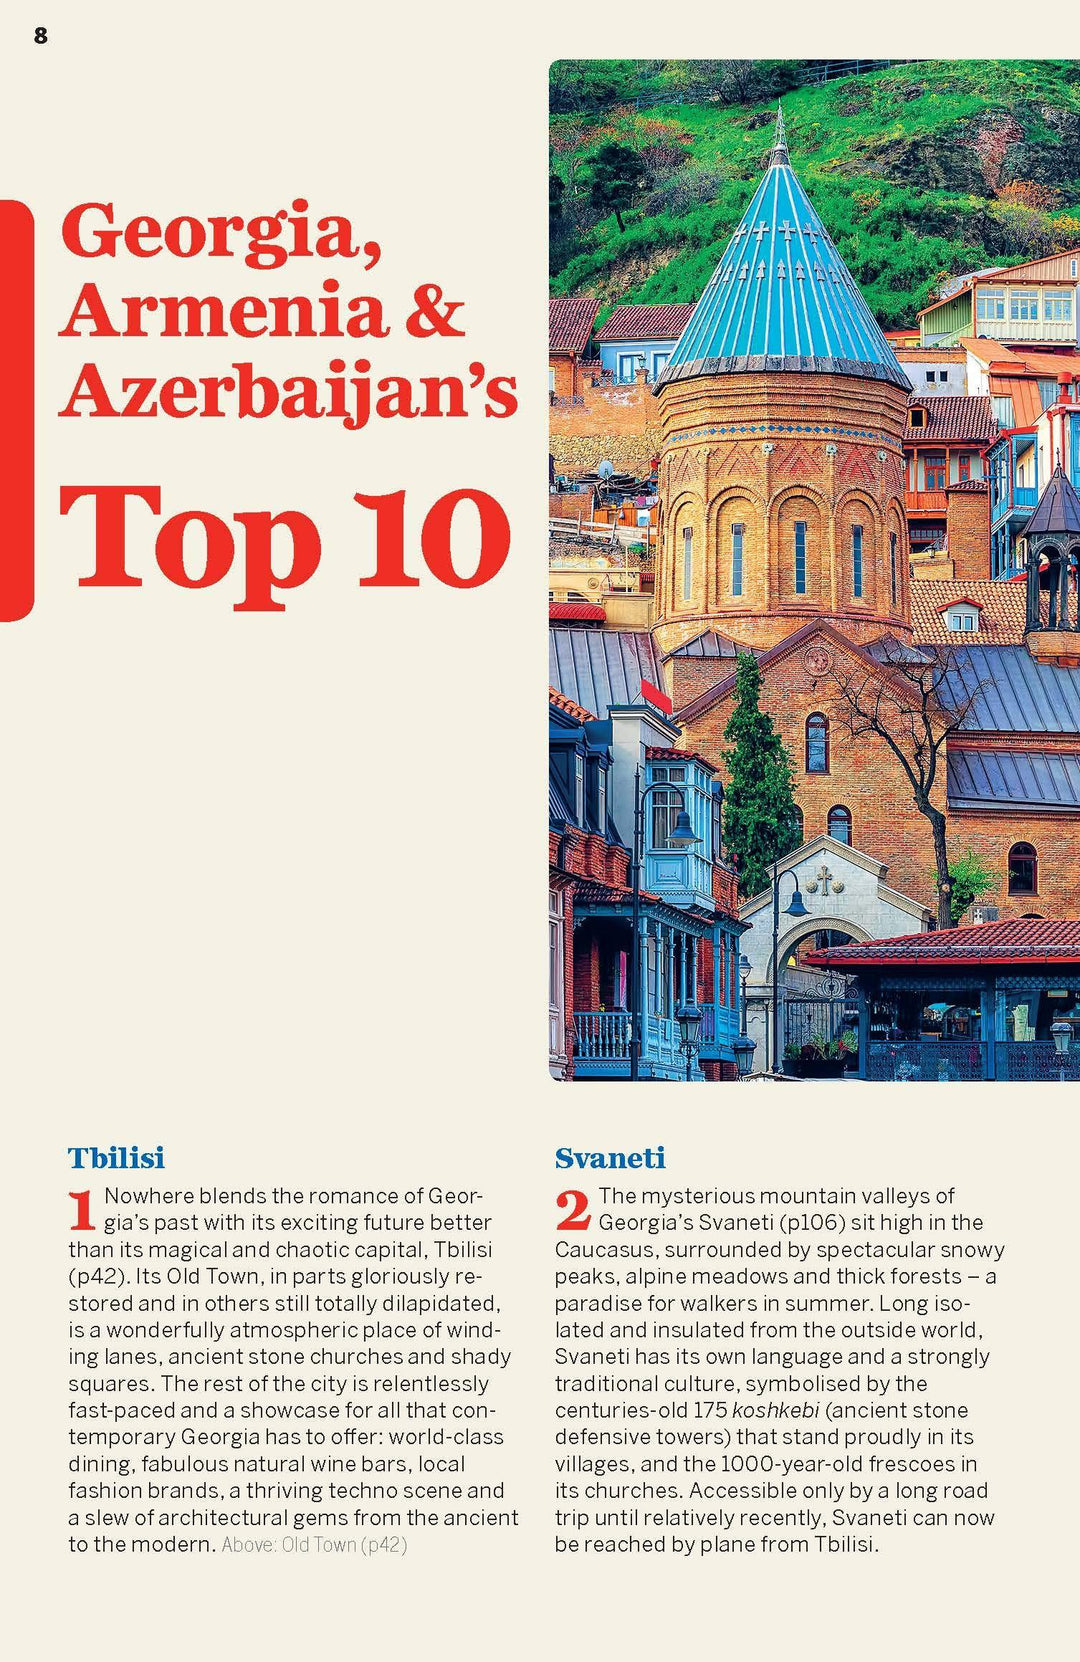 Guide de voyage (en anglais) - Georgia, Armenia & Azerbaijan | Lonely Planet guide de voyage Lonely Planet 